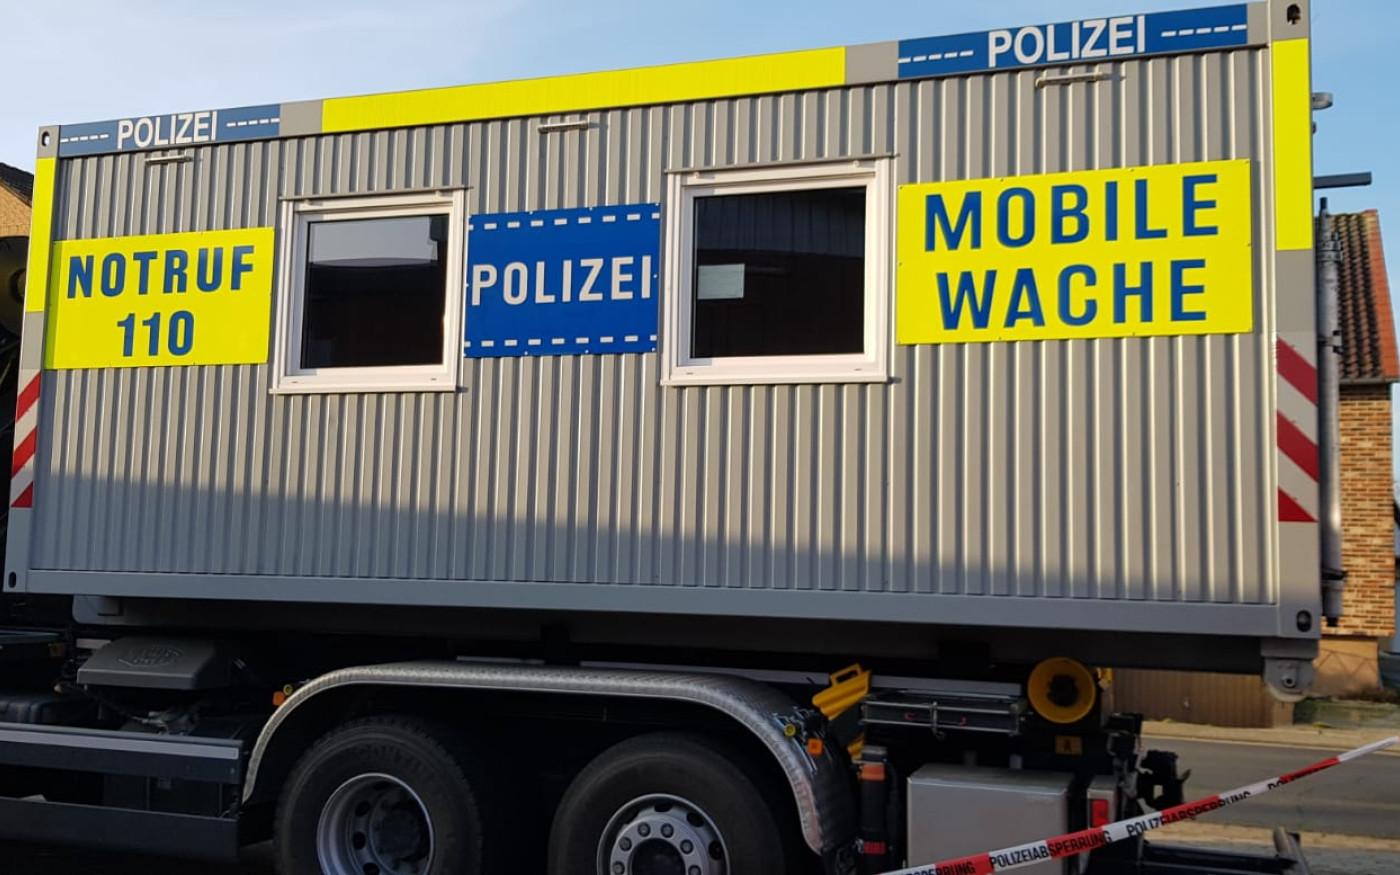 Wasserschaden im Polizeikommissariat Meinersen - Mobile Wache stellt Rund-um-die-Uhr-Präsenz sicher